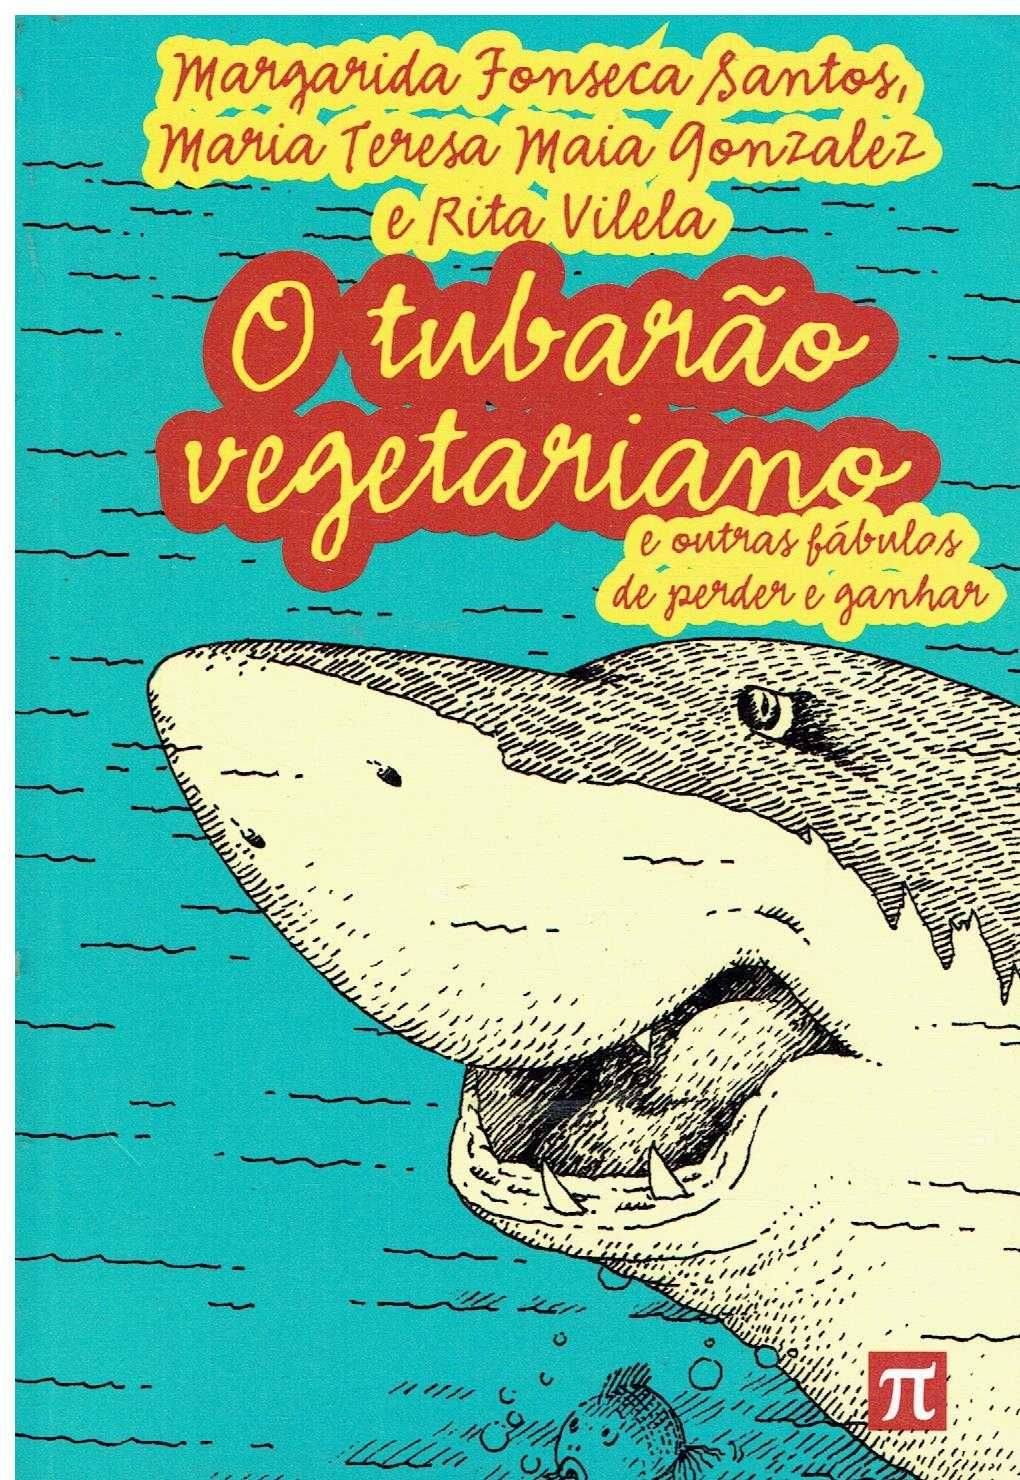 14044

O Tubarão Vegetariano